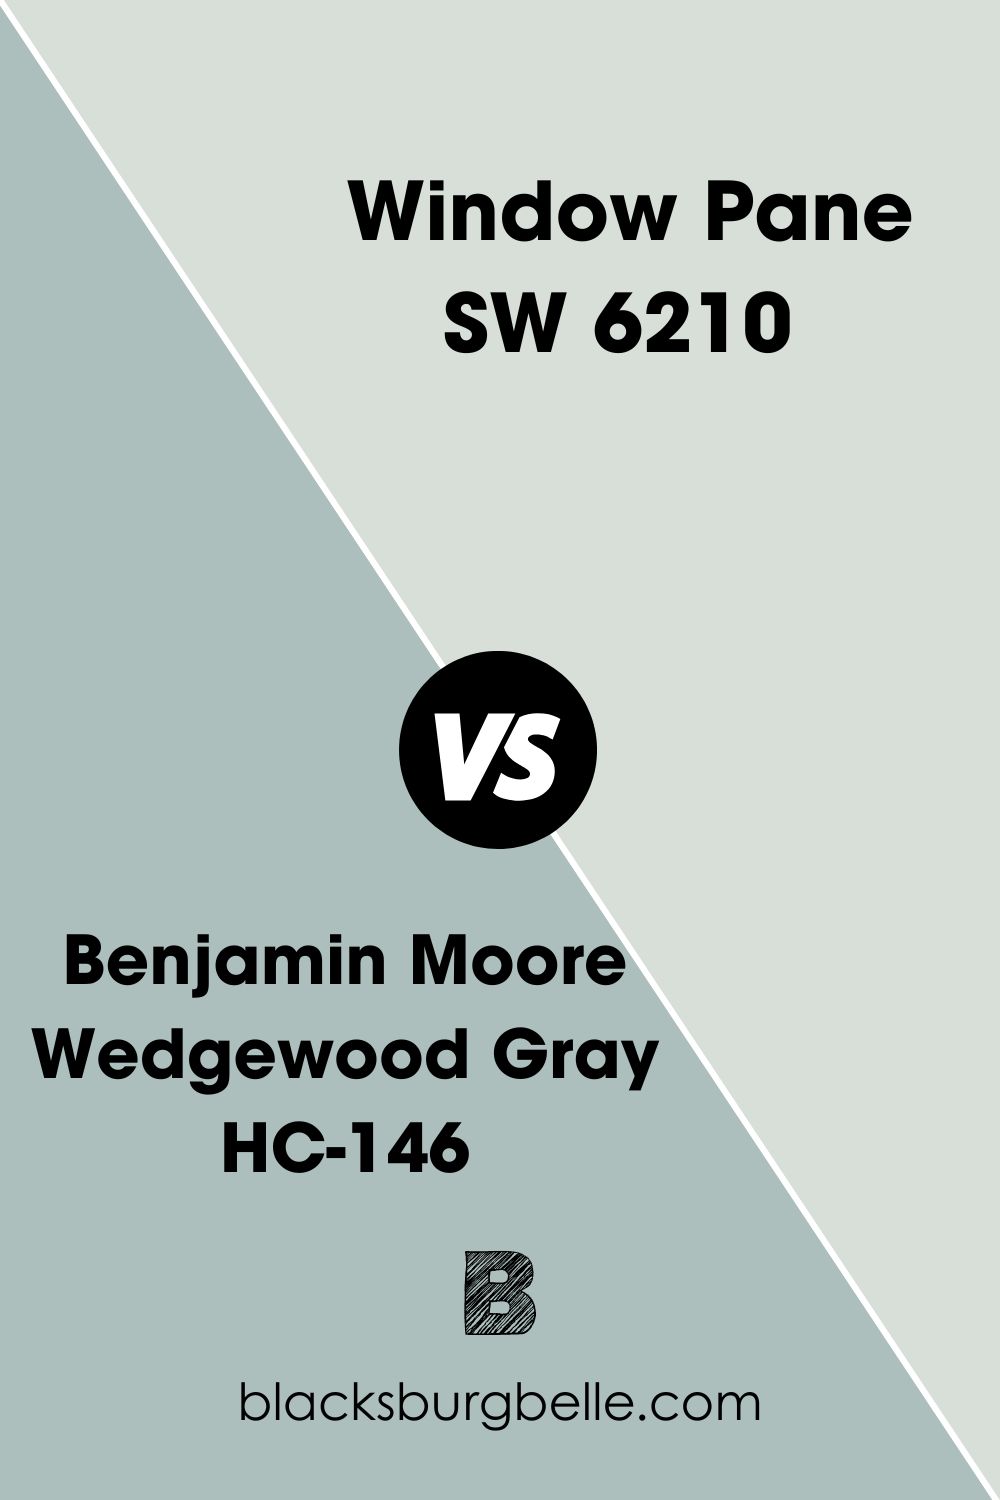 Benjamin Moore Wedgewood Gray HC-146